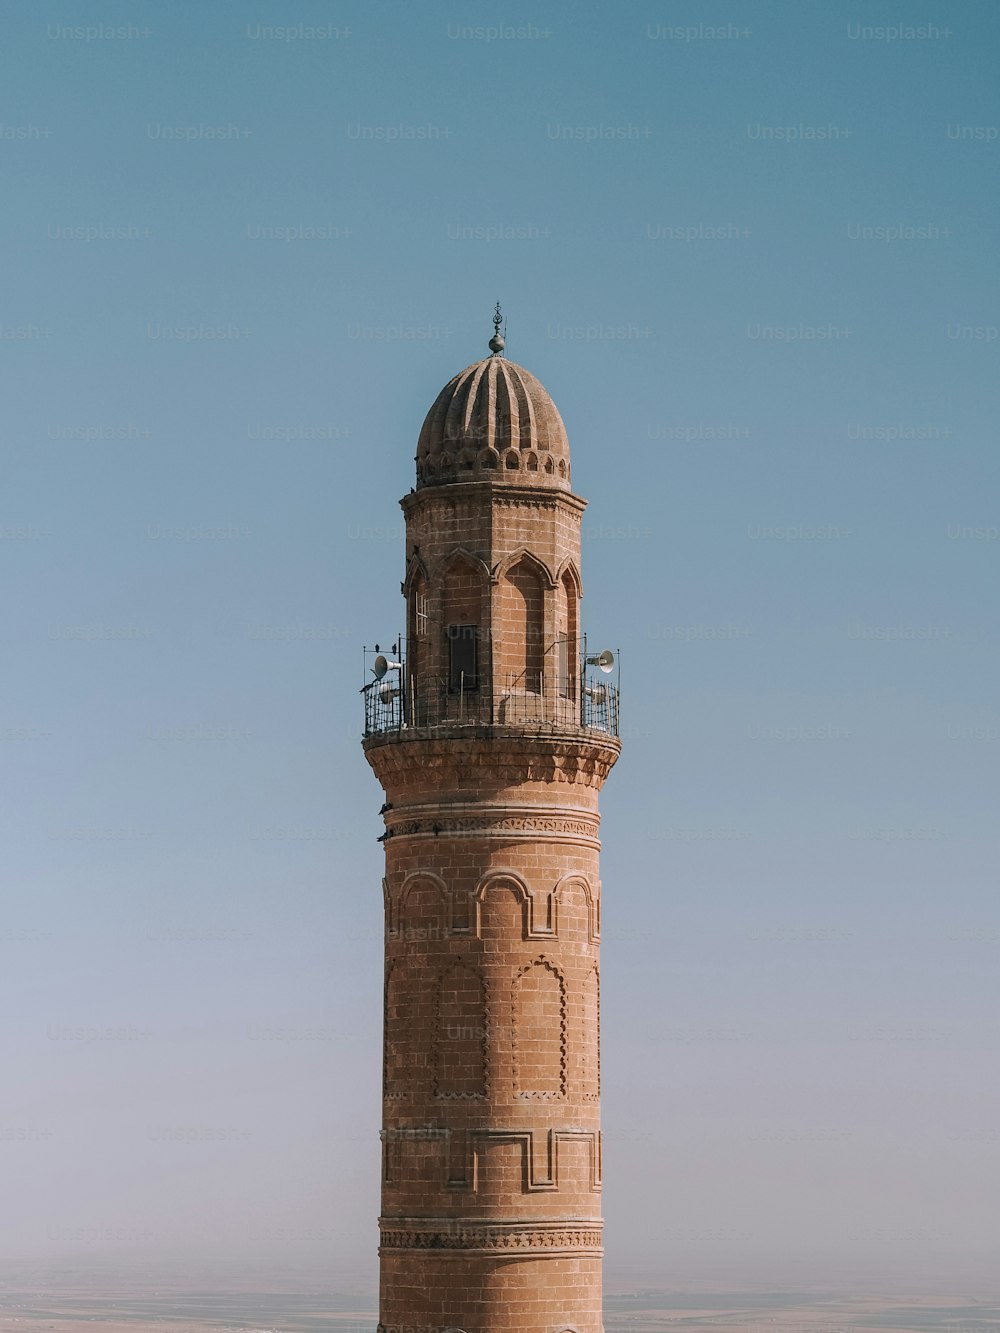 ein hoher Turm mit einer Uhr darauf